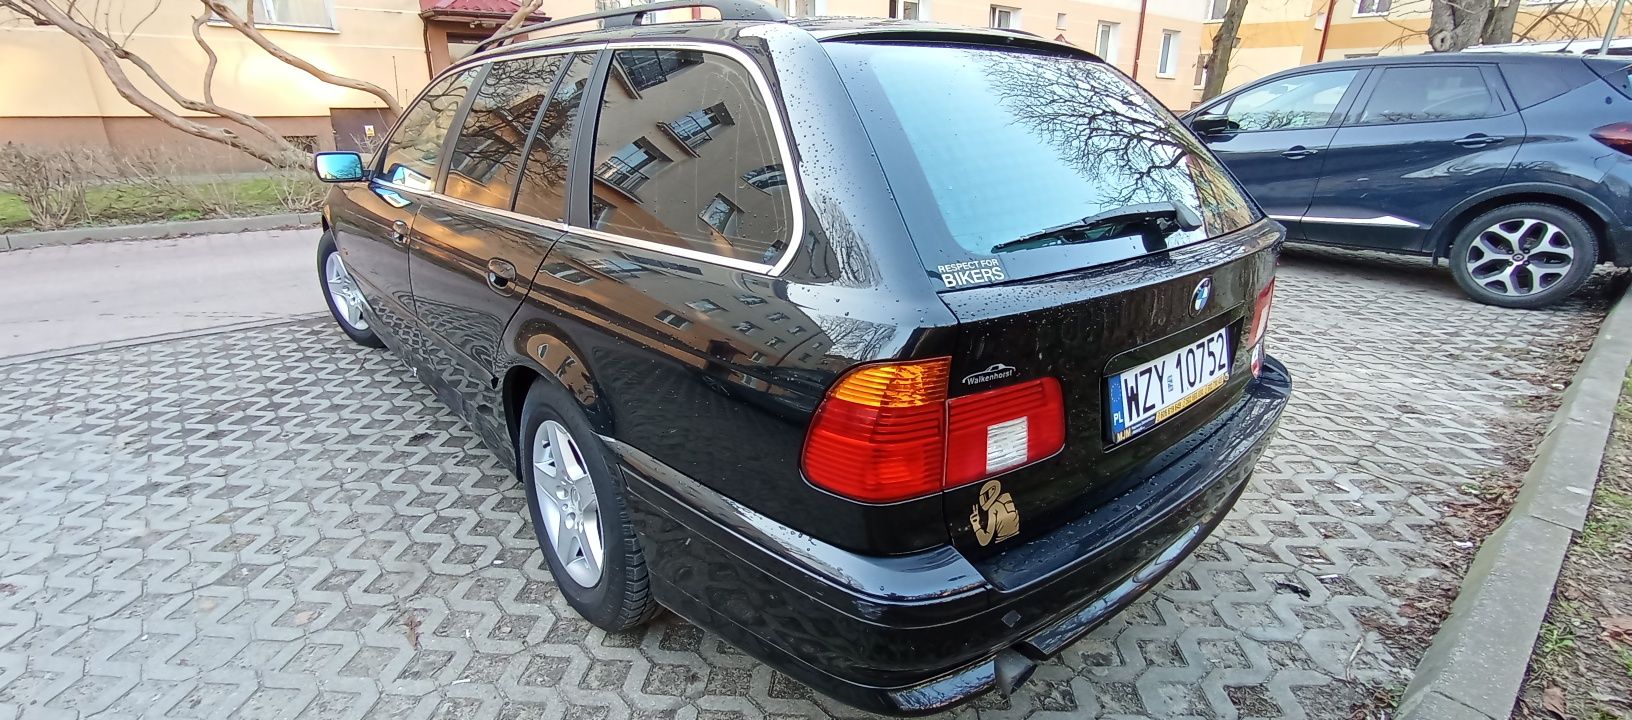 Sprzedam BMW E39 touring 2002r 2.2 170km LPG klima roczne oponyZAMIANA